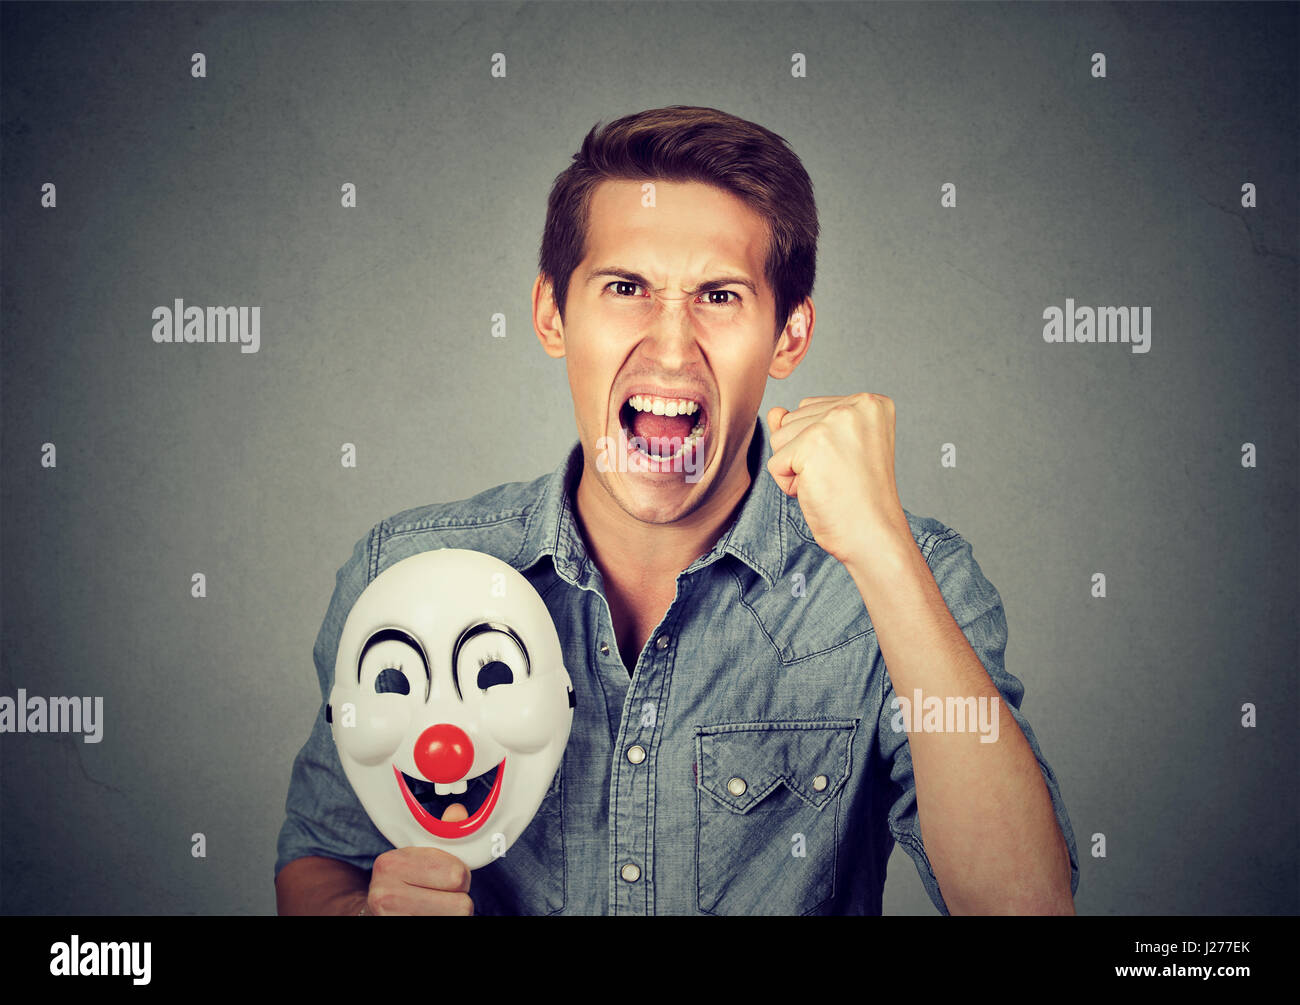 Porträt-junge verärgert böse schreienden Mann hält eine Clownsmaske mit dem Ausdruck ihrer Fröhlichkeit Glück auf graue Wand Hintergrund isoliert. Menschliche Emotionen ja Stockfoto